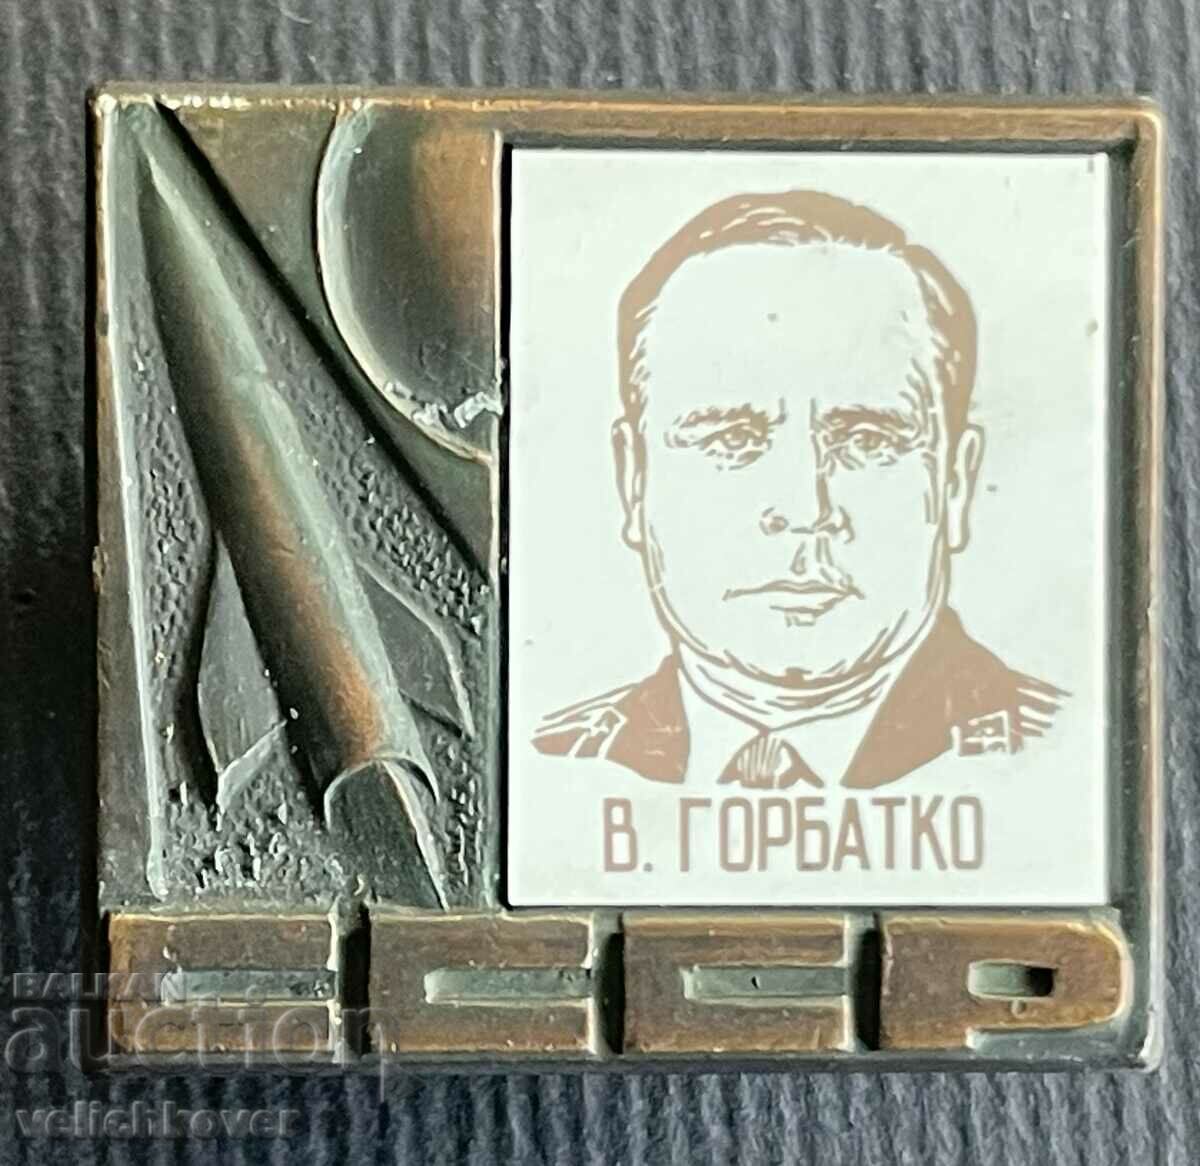 36163 СССР космически знак космонавт В. Горбатко